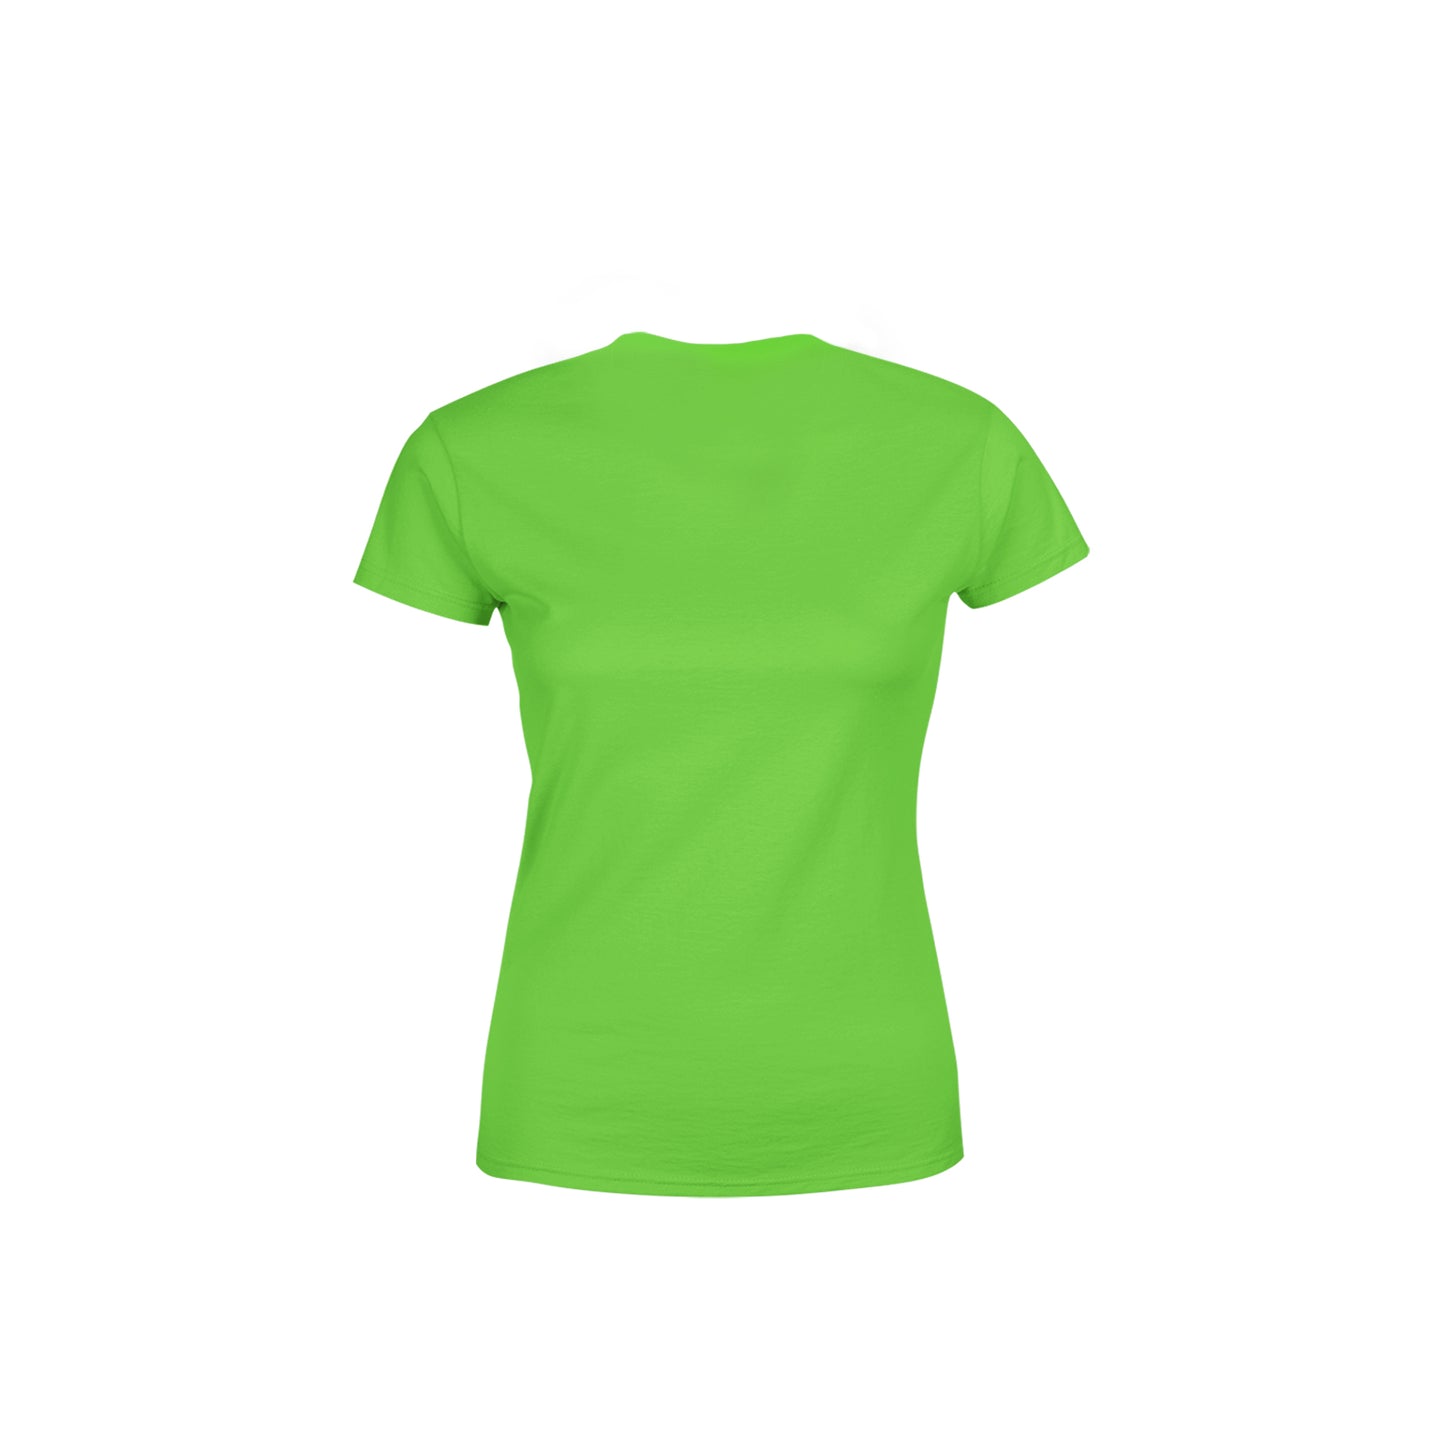 19 Number Women's T-Shirt (Liril Green)